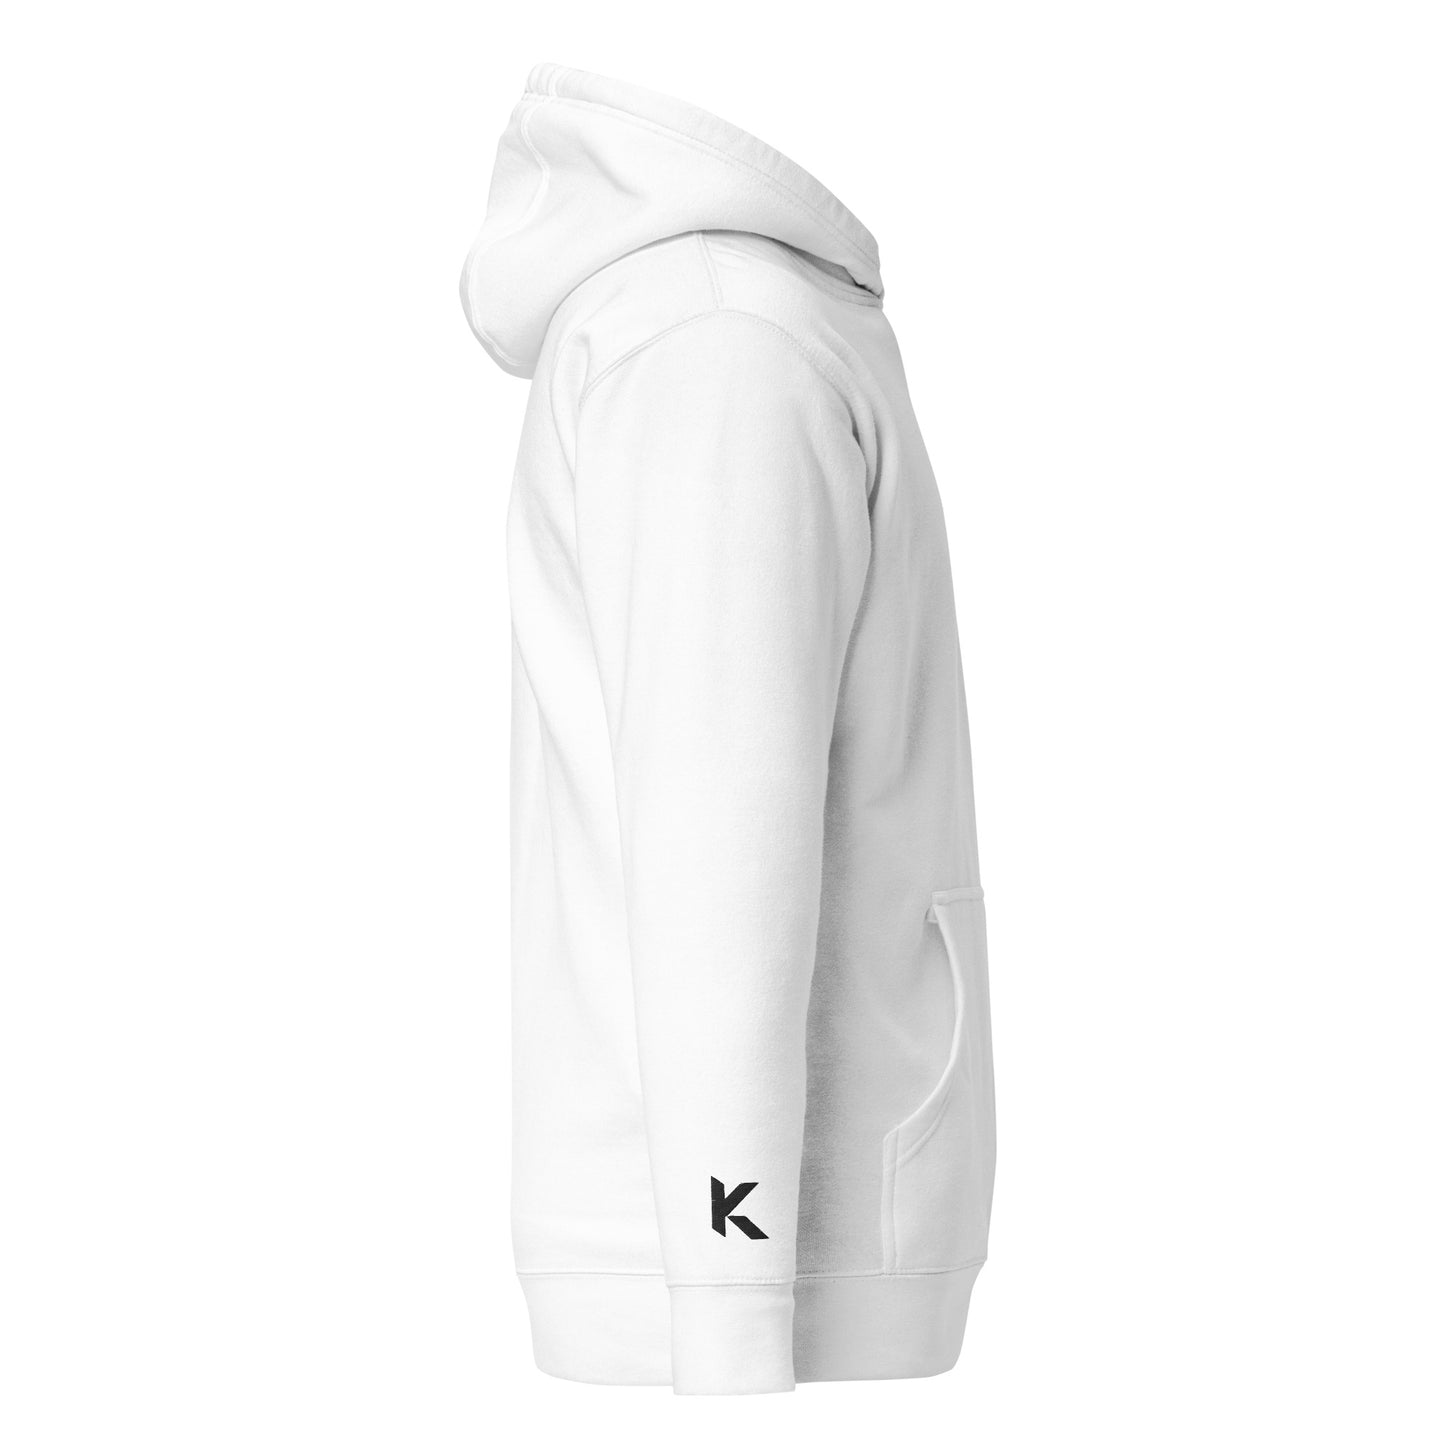 Klediq hoodie / White